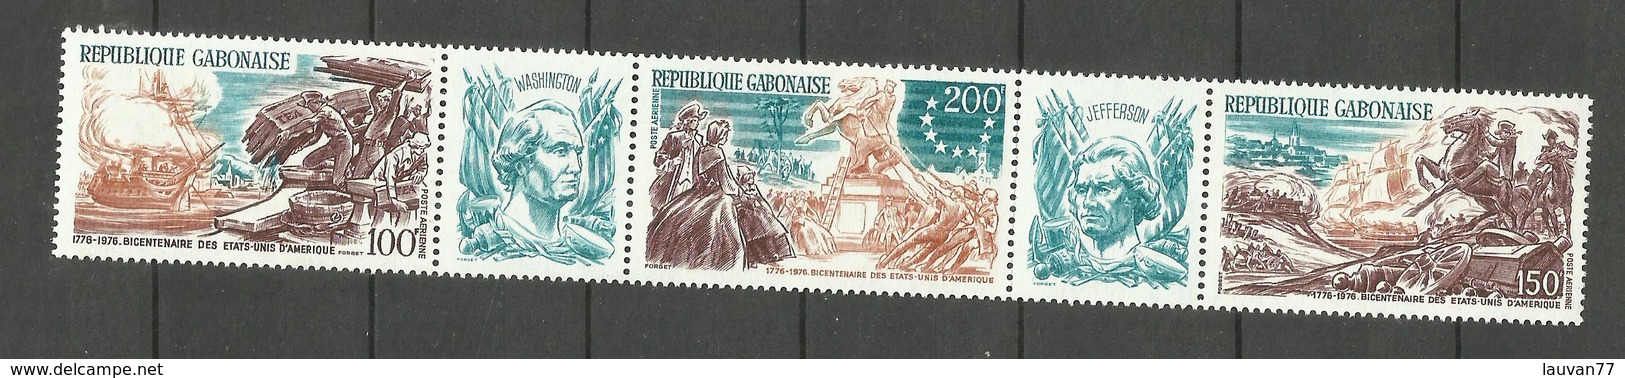 Gabon Poste Aérienne N° 180A Neuf** Cote 7.55 Euros - Gabon (1960-...)